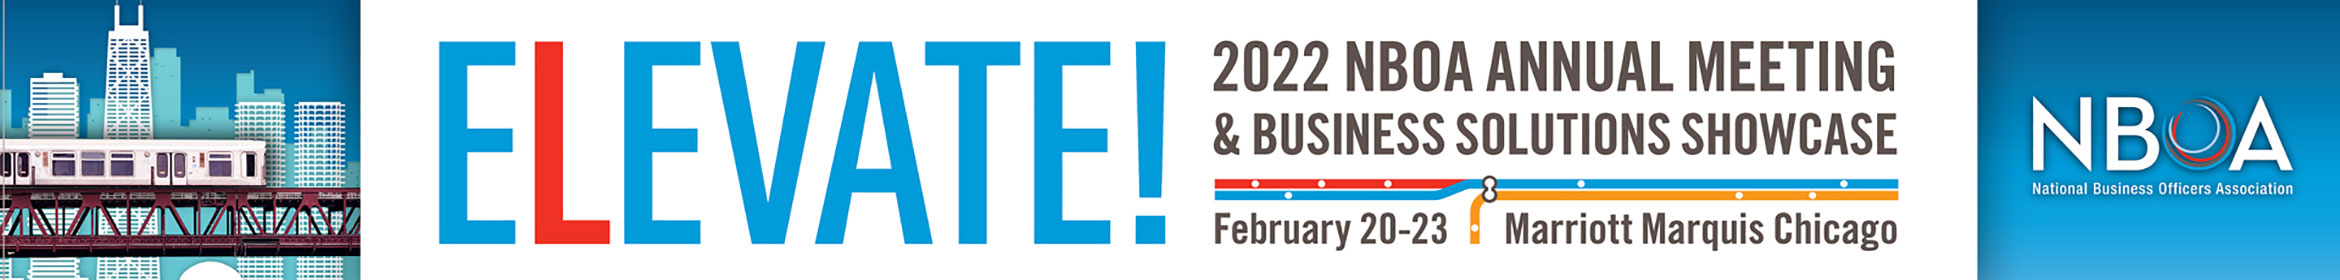 2022 NBOA Annual Meeting Main banner